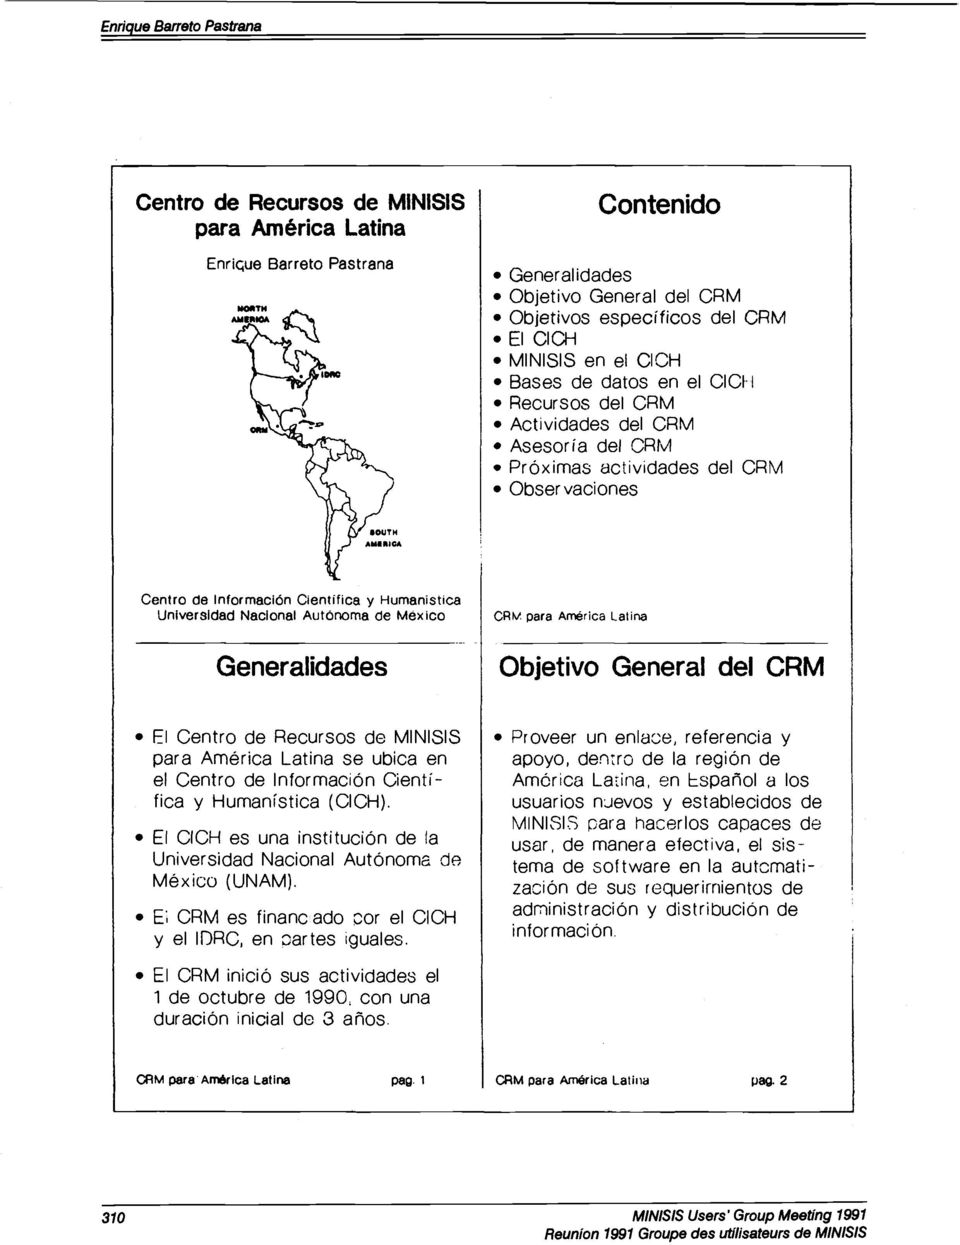 Nacional Autónoma de México Generalidades CRm para América Latina Objetivo General del CRM El Centro de Recursos de MINISIS para América Latina se ubica en el Centro de Información Científica y